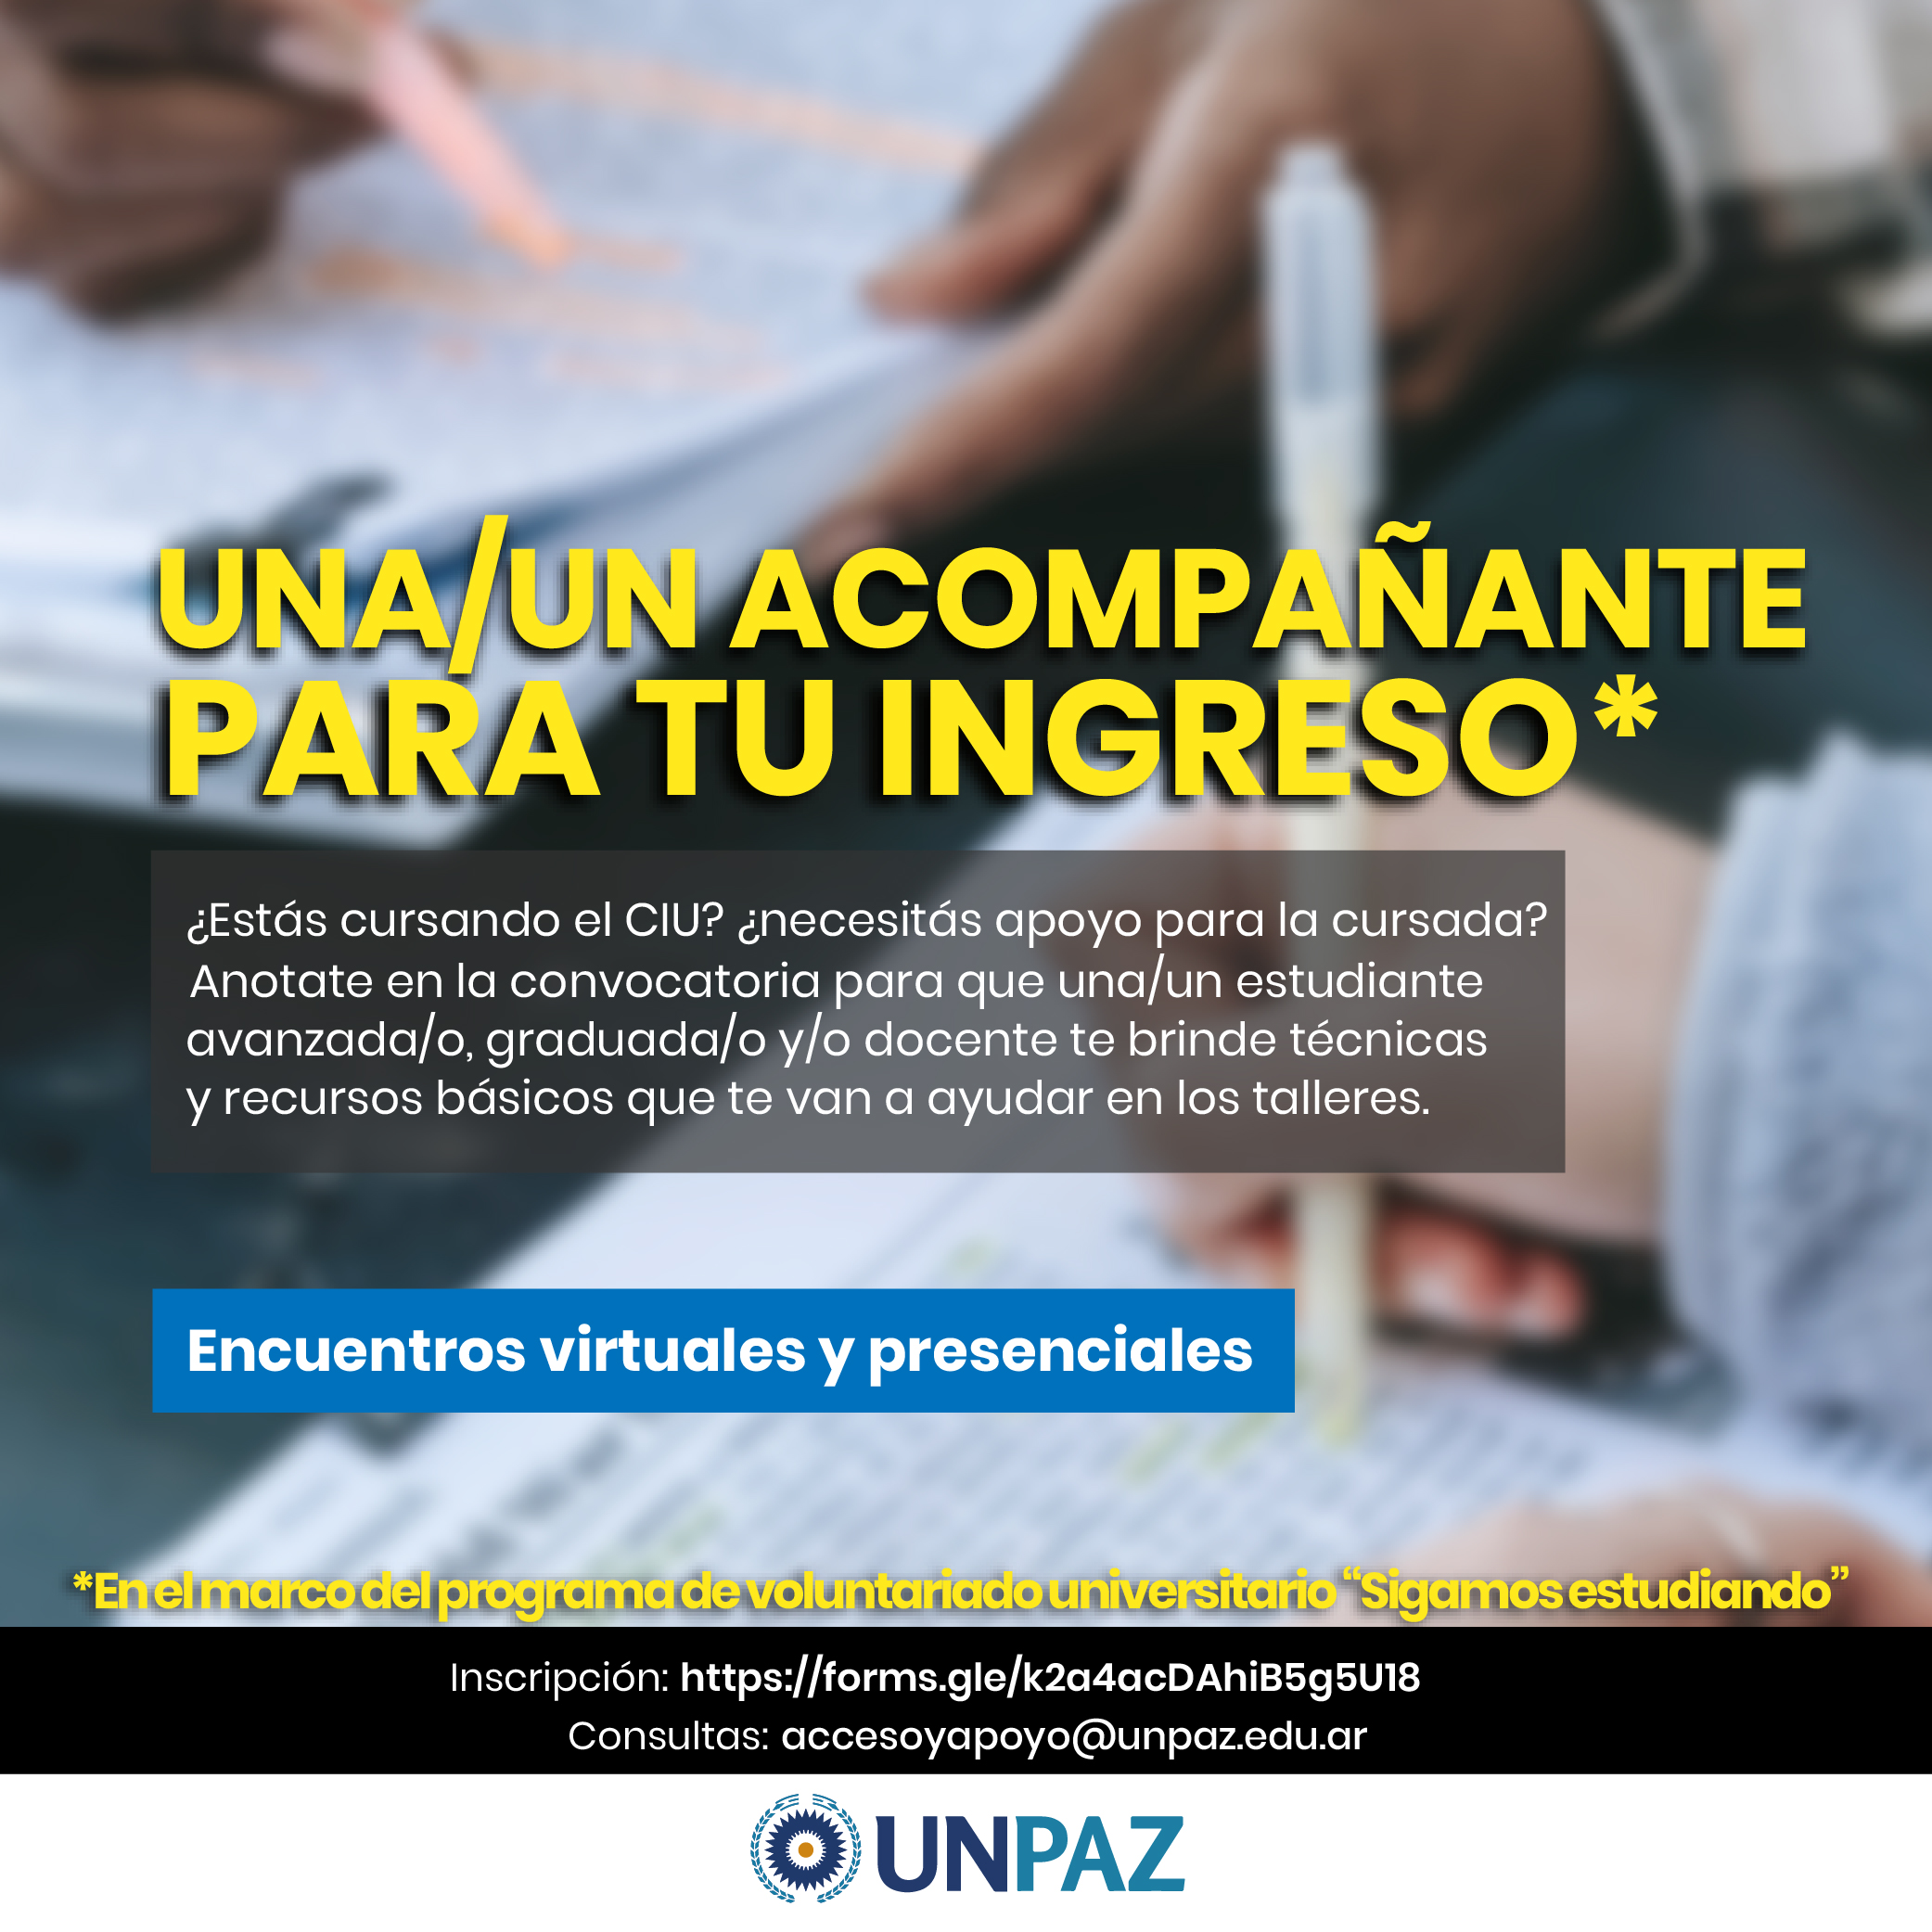 Proyecto “Una/un Acompañante para tu ingreso” - UNPAZ